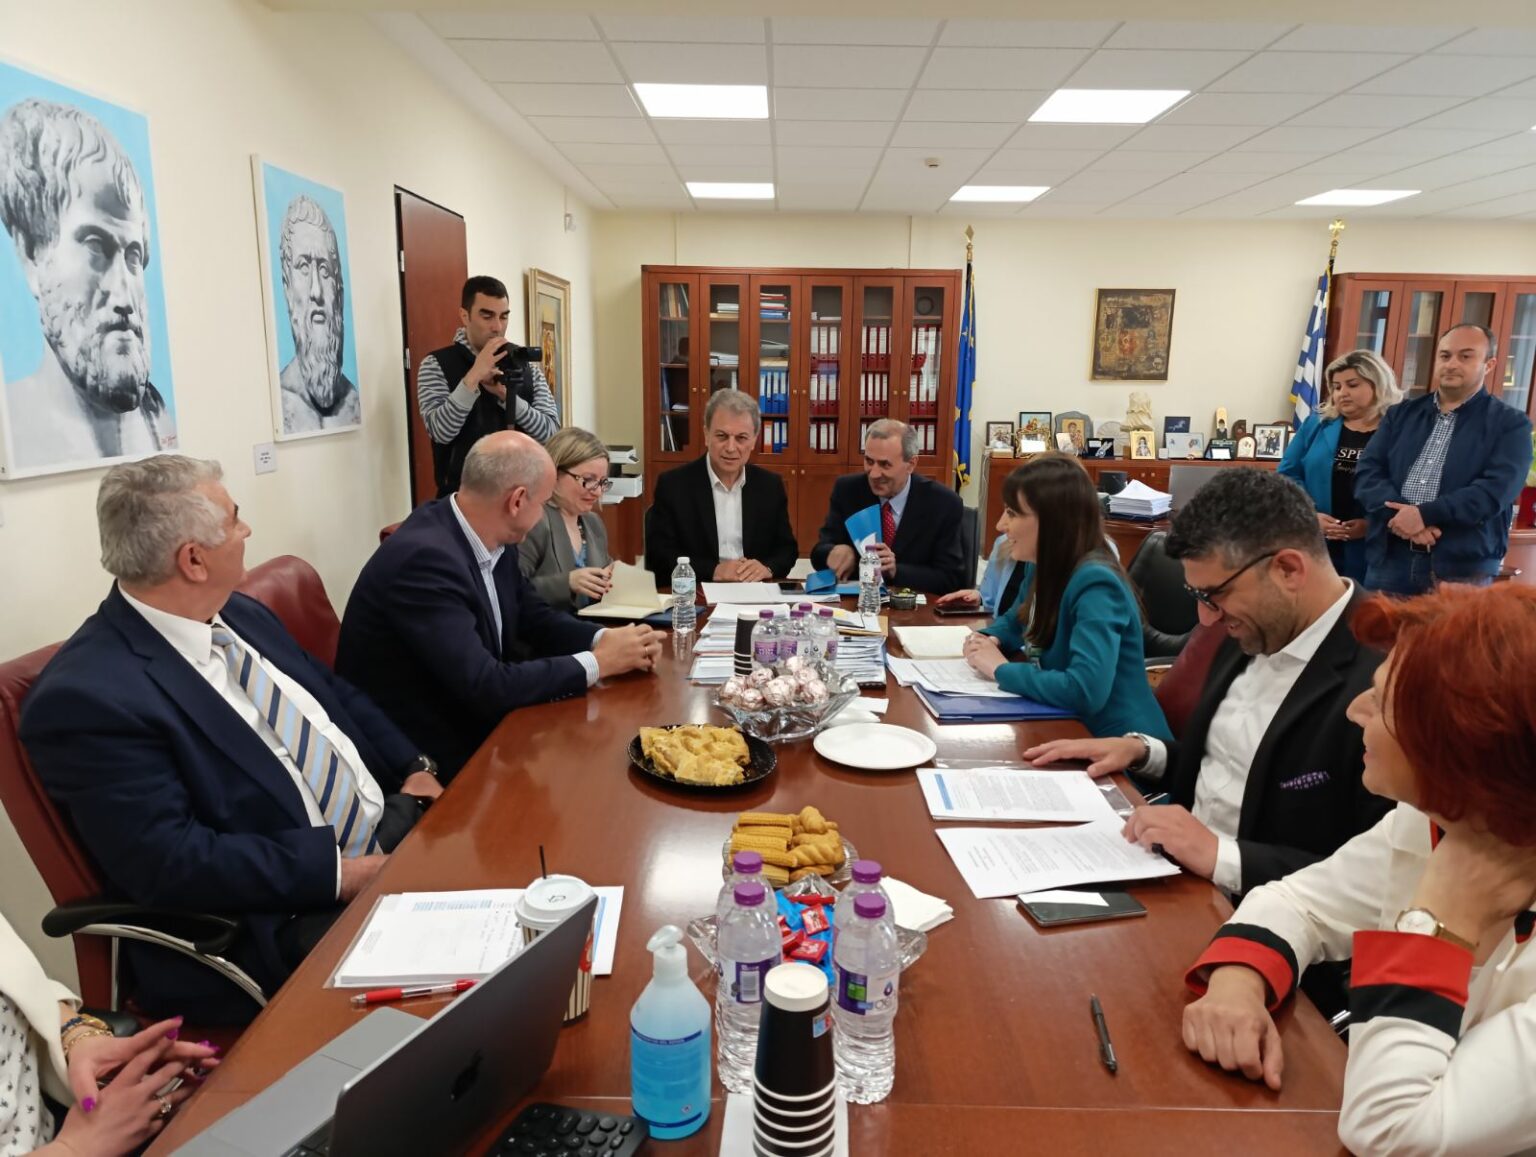 Επίσκεψη της Υφυπουργού Εσωτερικών Βιβής Χαραλαμπογιάννη στην Περιφέρεια Δυτικής Μακεδονίας - Πρόταση σύναψης Μνημονίου Συνεργασίας μεταξύ της Περιφέρειας και της Γ. Γ.  Δημόσιας Διοίκησης του ΥΠΕΣ